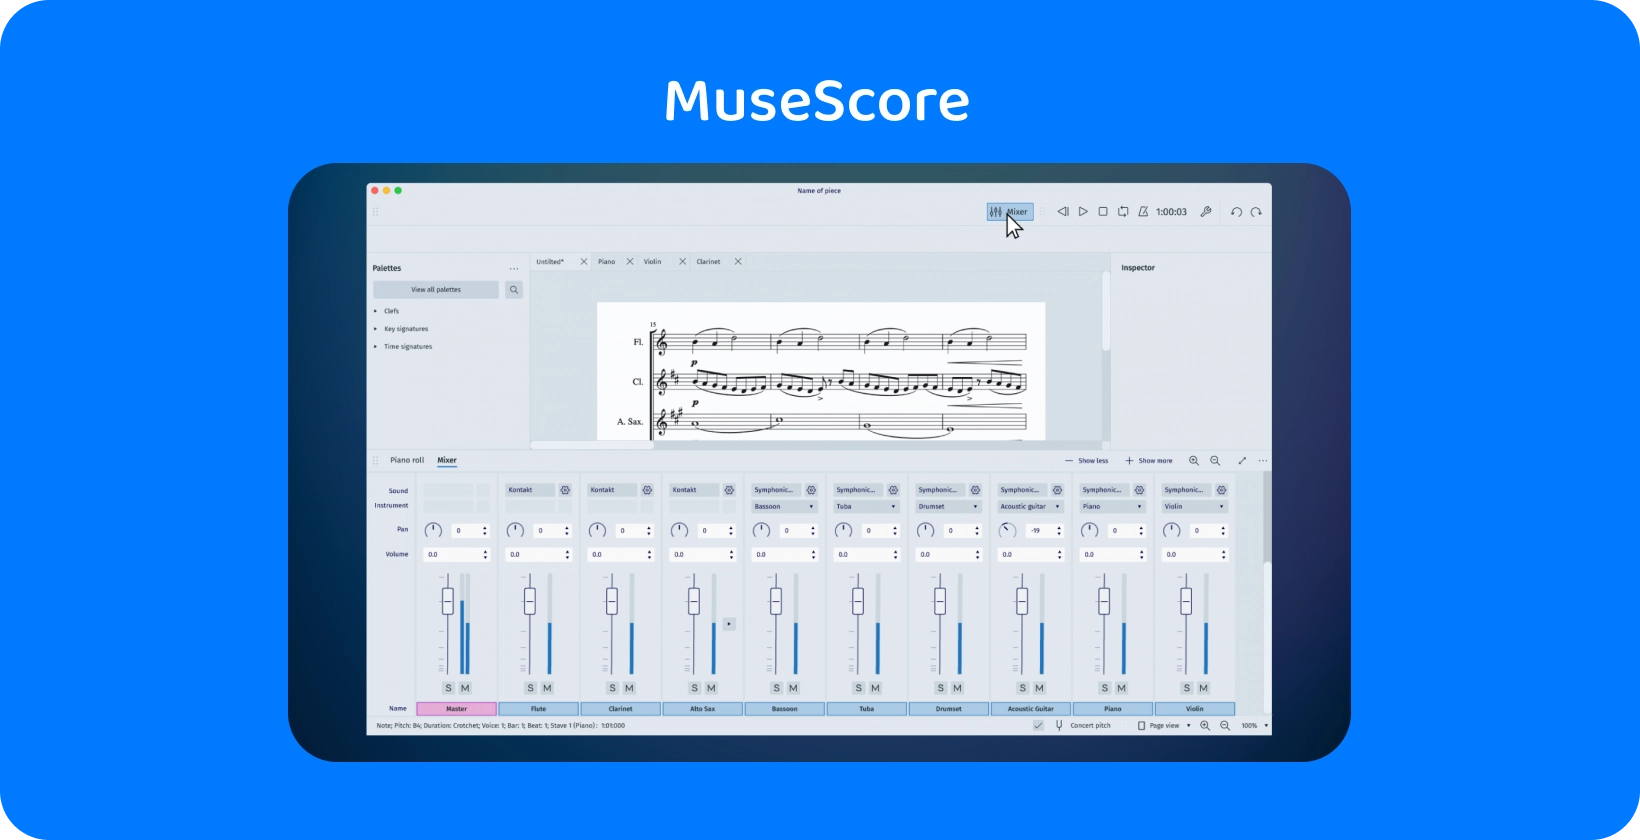 음악 제작자에게 필수적인 오디오 트랜스크립션을 위한 믹서 도구를 보여주는 MuseScore 인터페이스입니다.